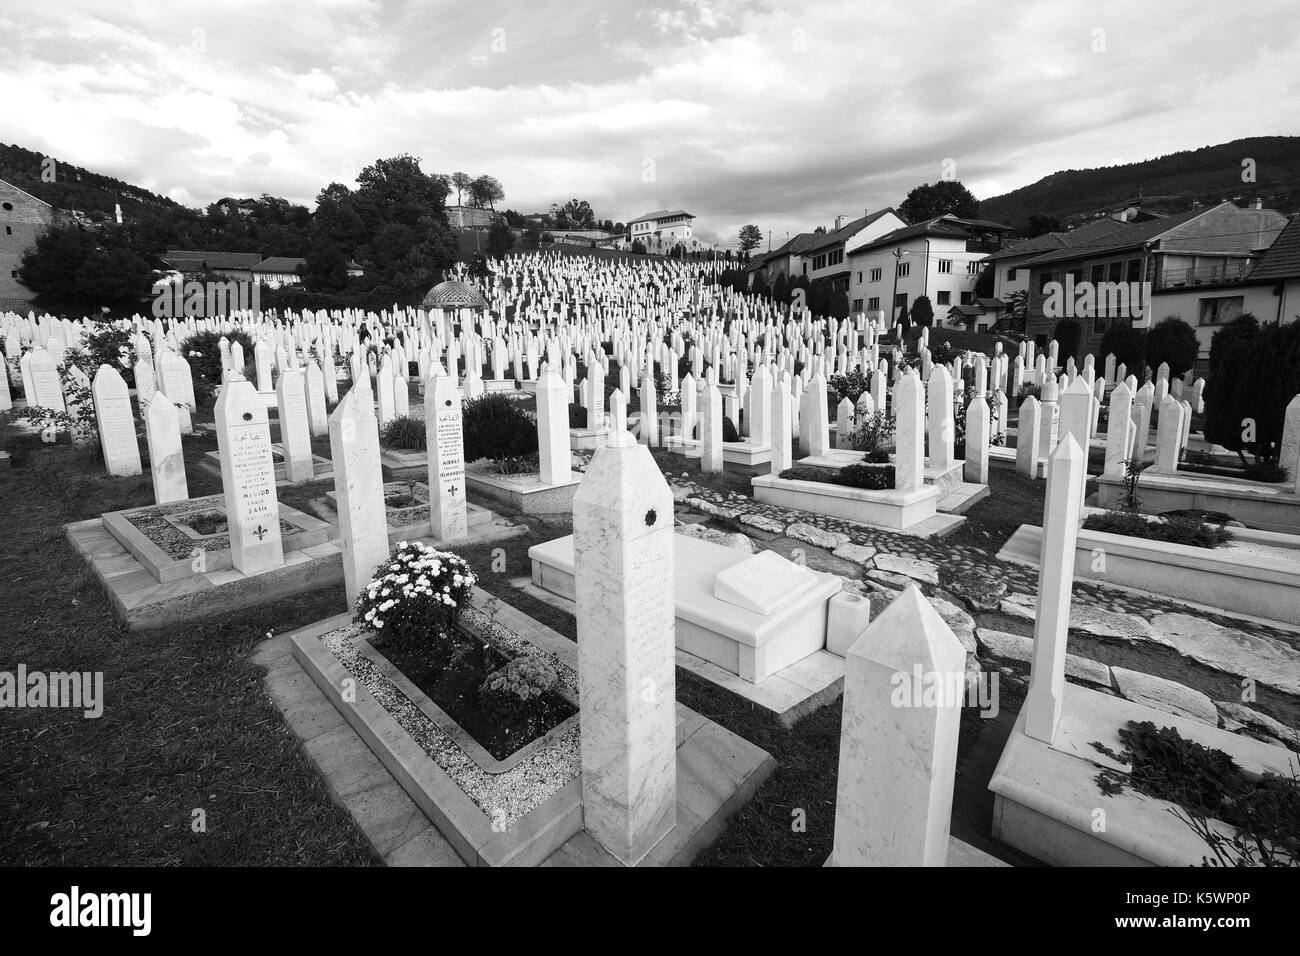 The Martyrs' Memorial Cemetery Kovači for victims of the war in Stari Grad,Sarajevo,Bosnia and Herzegovina. Stock Photo